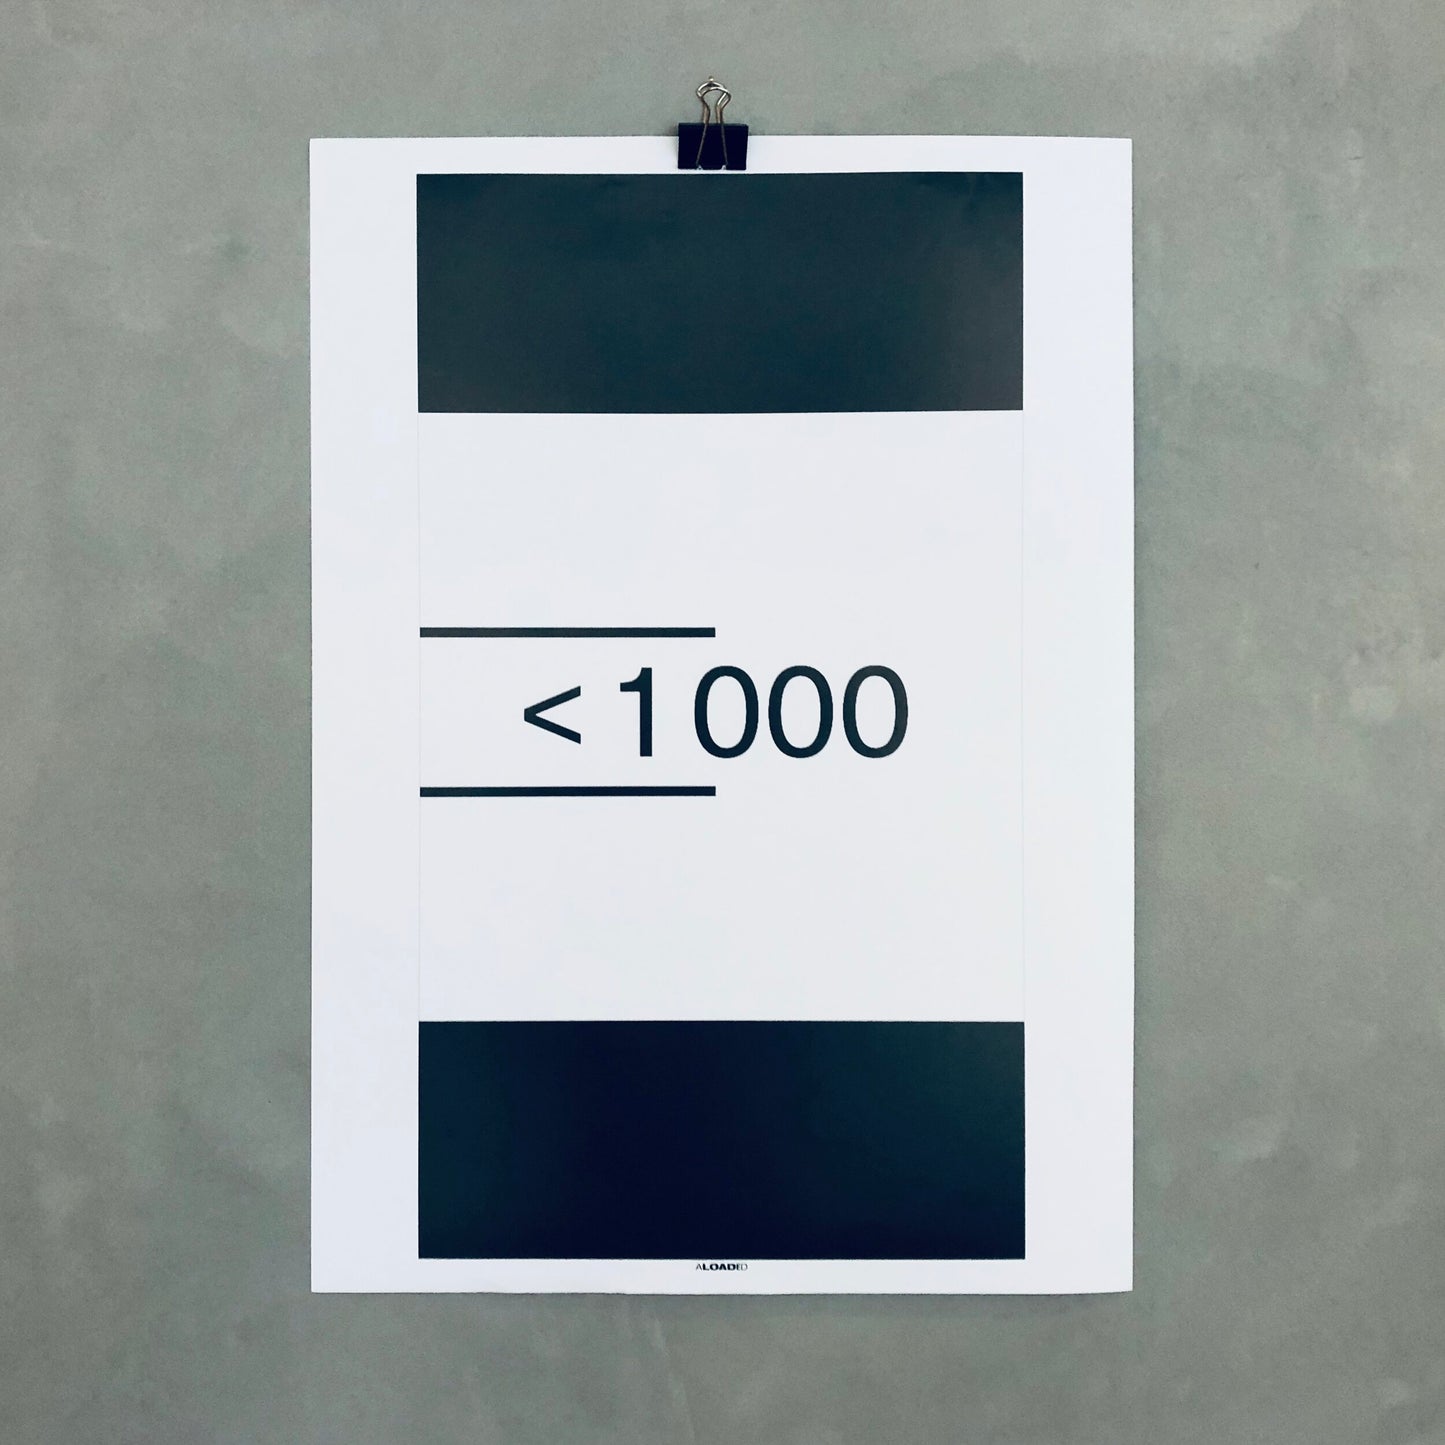 &lt;1000 Promotion Poster